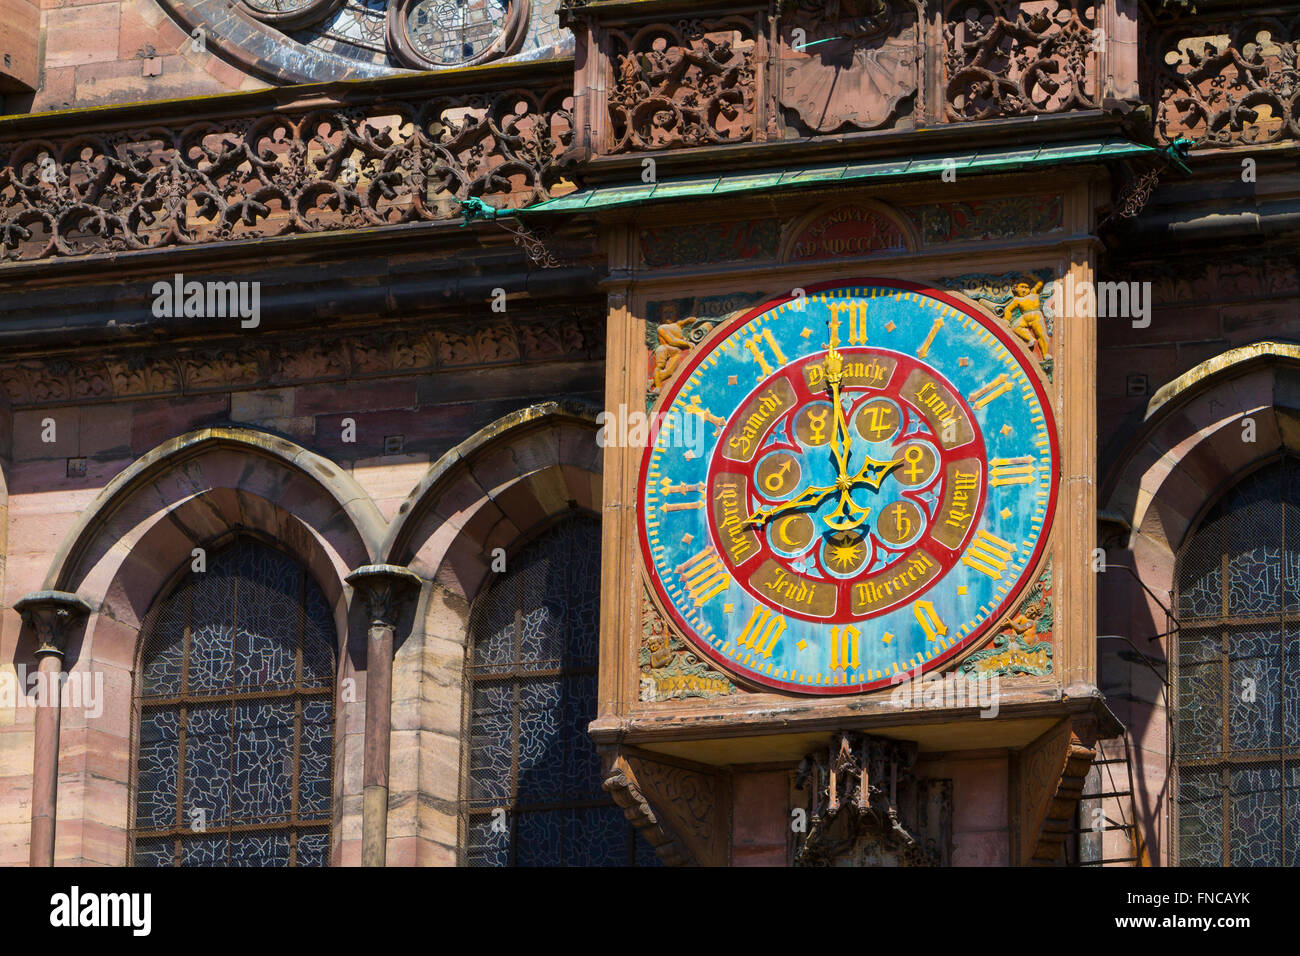 Astronomische Uhr, Liebfrauenkathedrale, Straßburg Elsass Frankreich Stockfoto